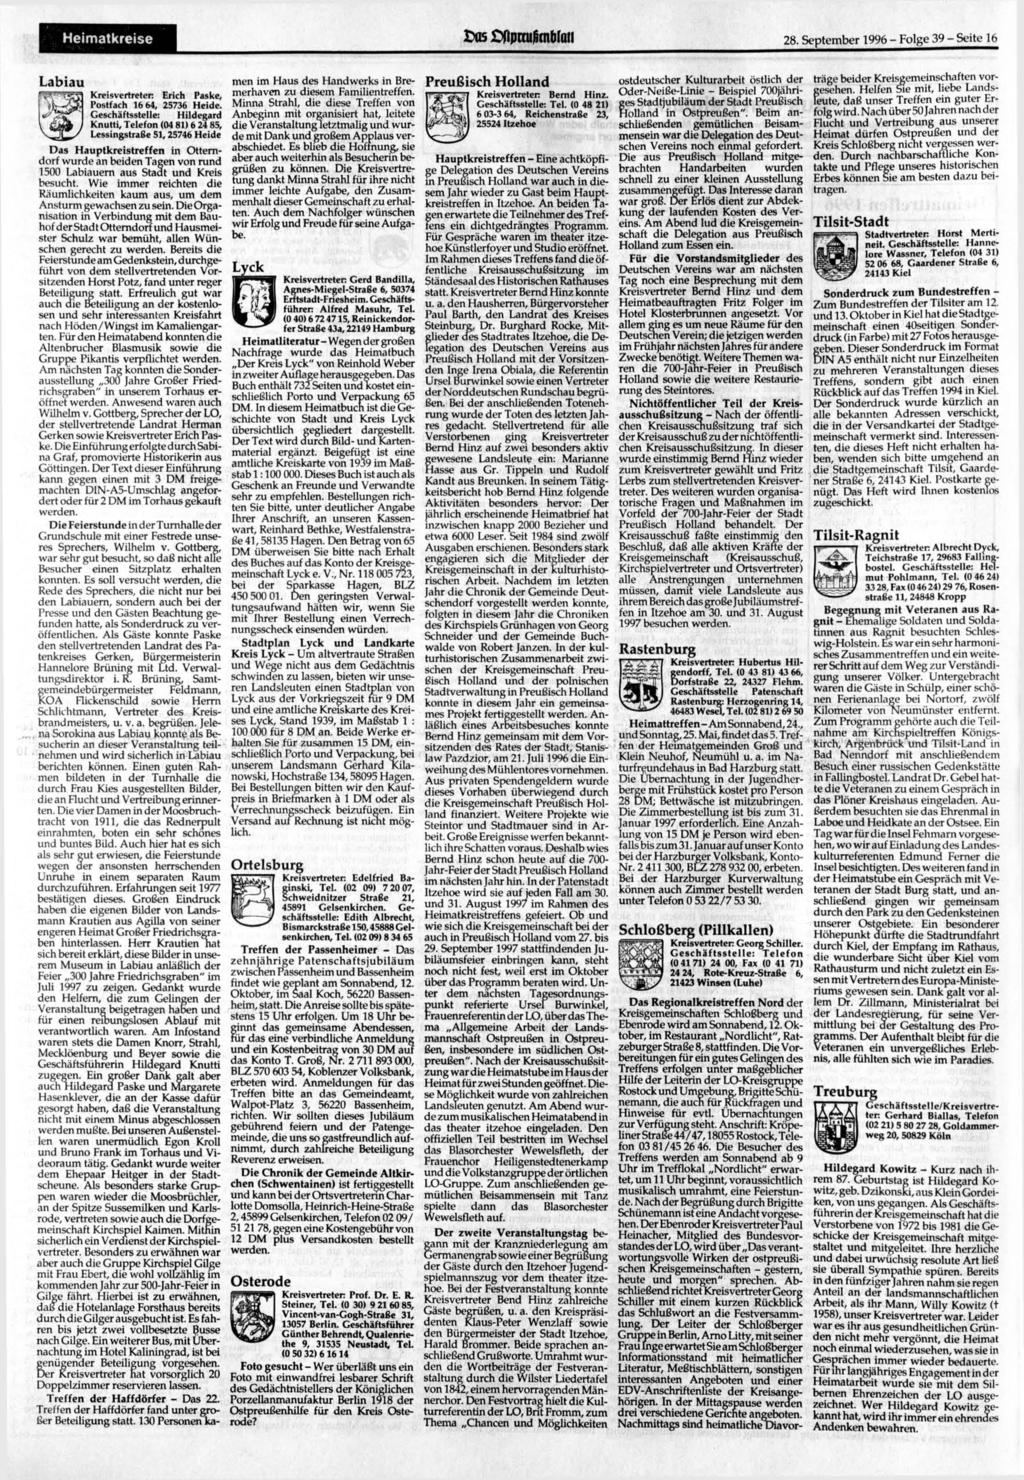 Heimatkreise ft ffpmt knmau 28. 1996 - Folge 39 - Seite 16 Labiau Kreisvertreter: Erich Paske, Postfach 16 64, 25736 Heide.